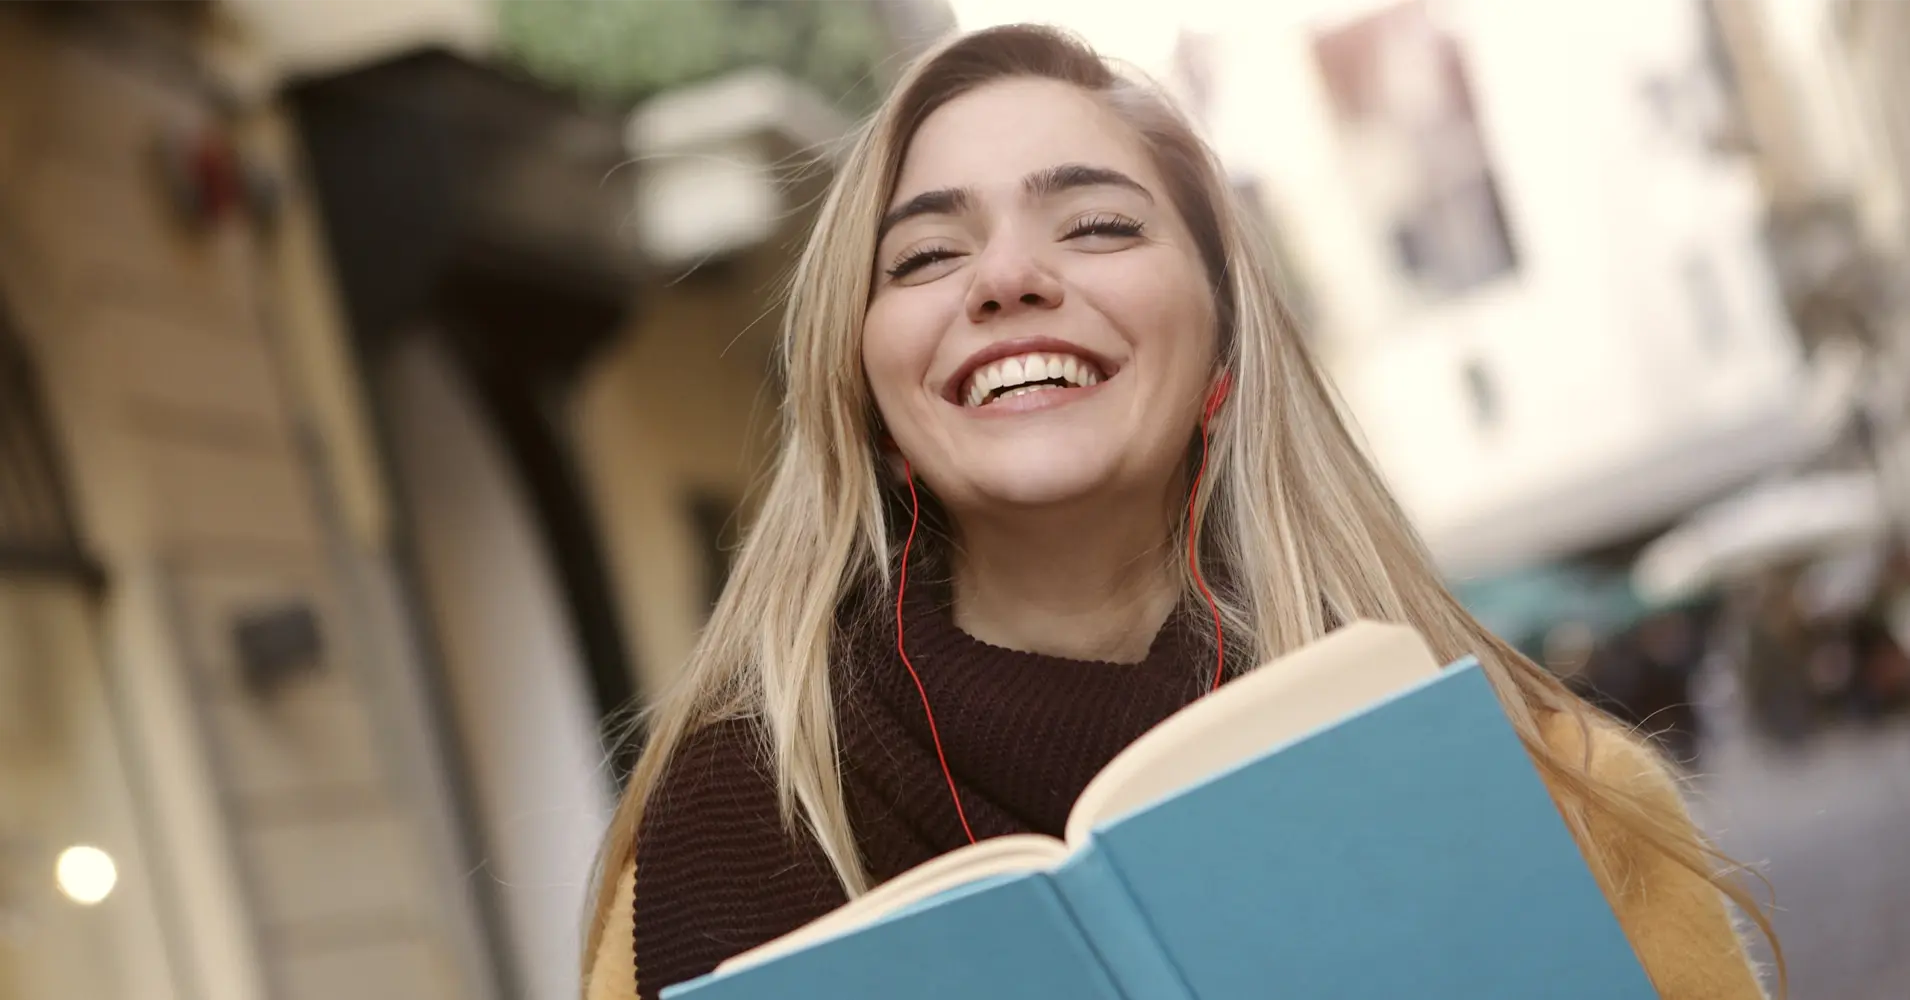 Rapariga feliz a estudar no estrangeiro